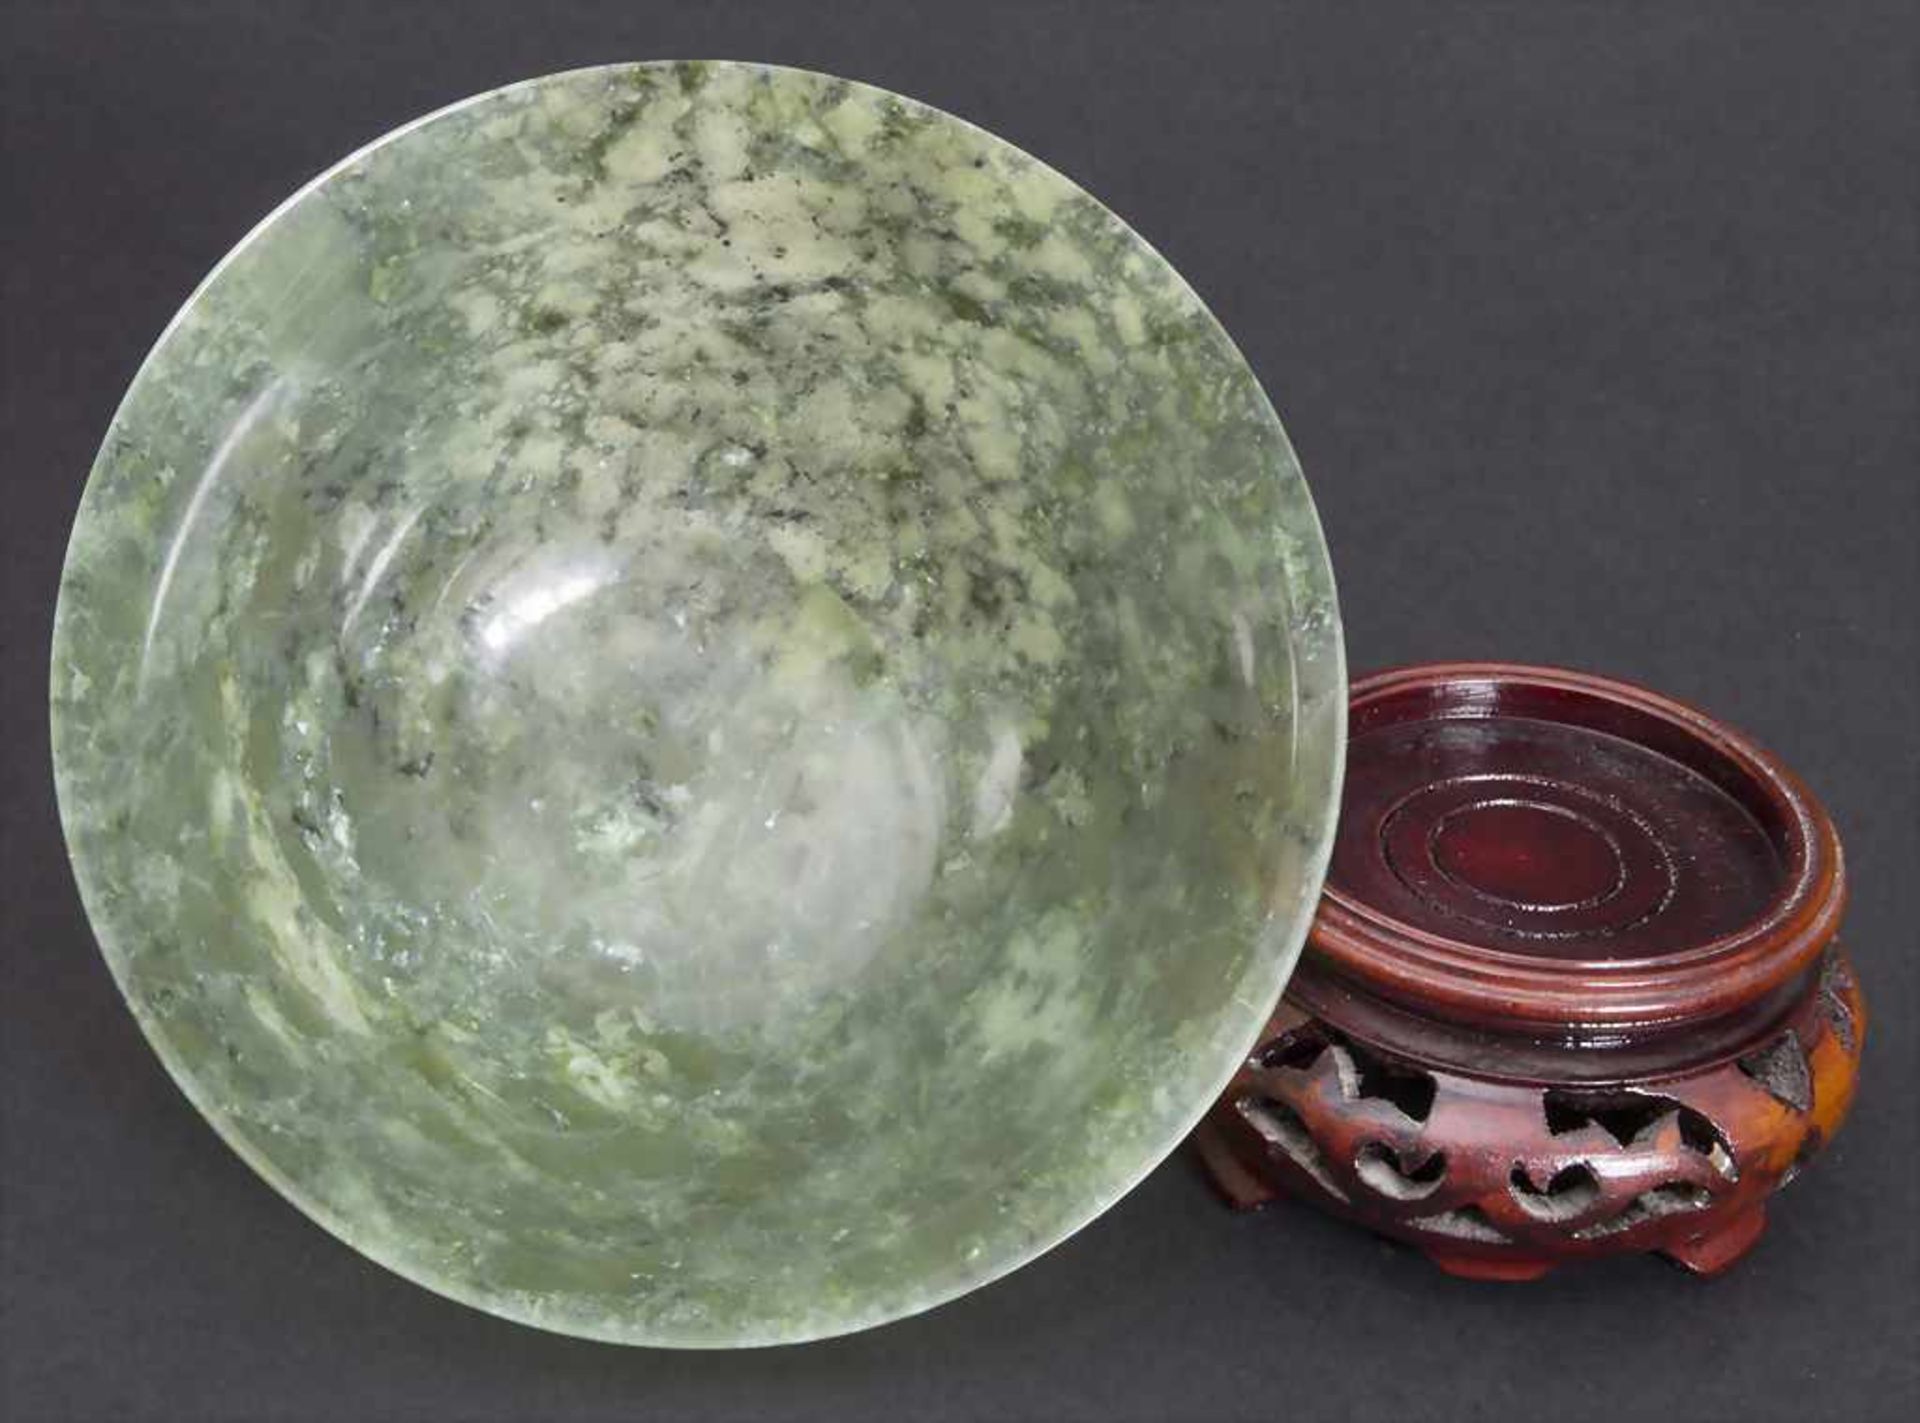 Jade Schale / A Jade Bowl, China, 20. Jh.Material: Jade, auf Holzständer,Maße: H. 5 cm,Zustand: gut- - Bild 2 aus 3